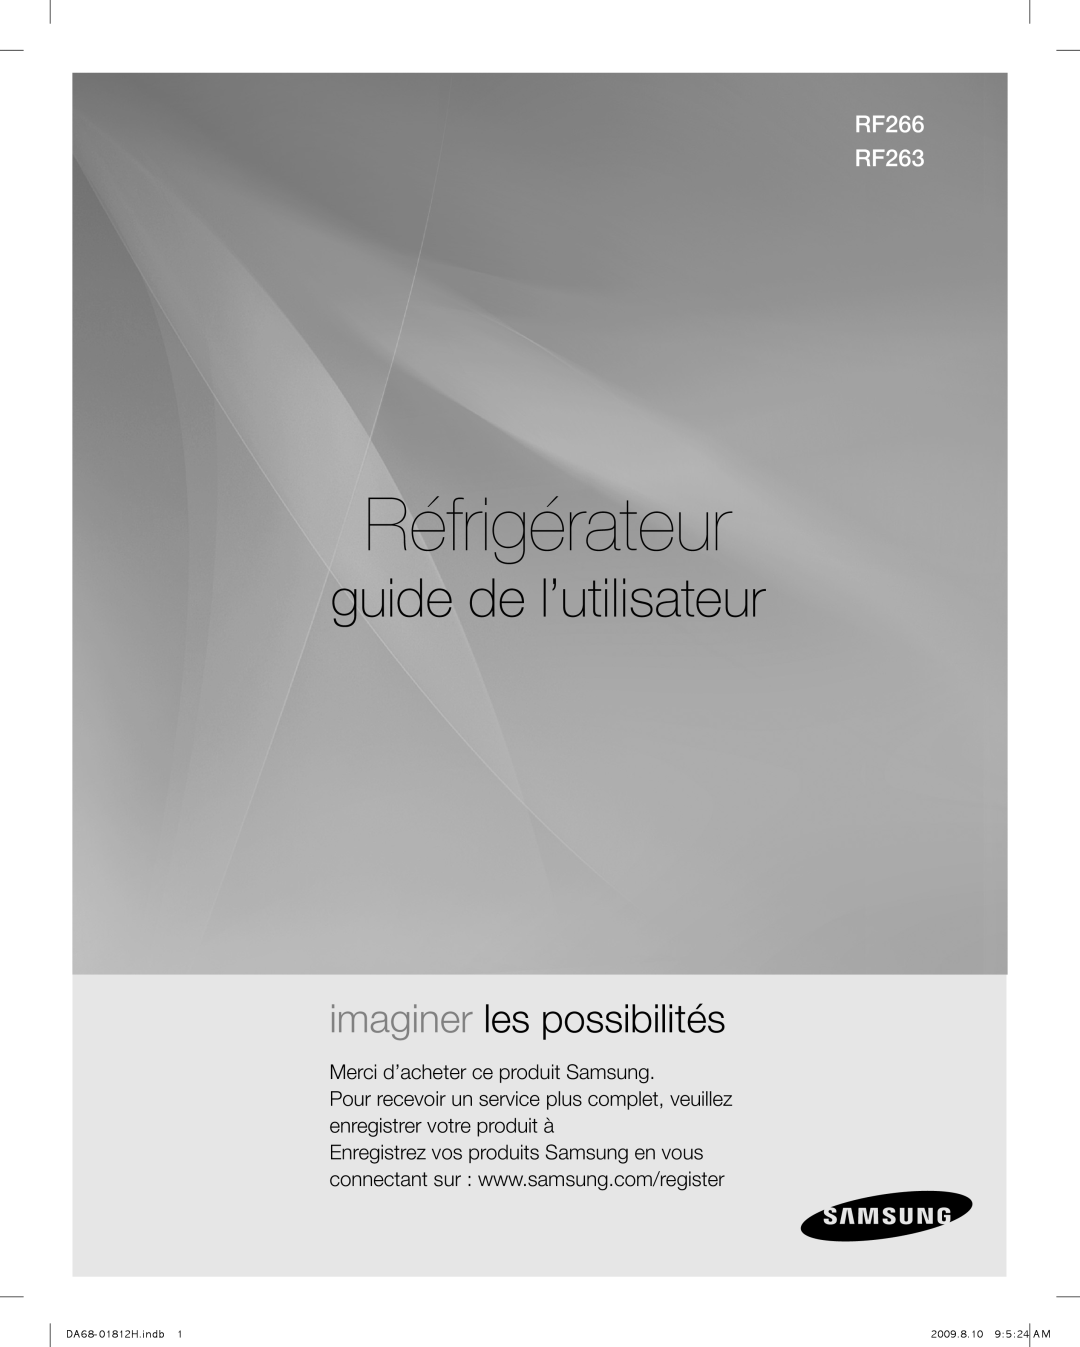 Samsung user manual Réfrigérateur, guide de l’utilisateur, imaginer les possibilités, RF266 RF263 